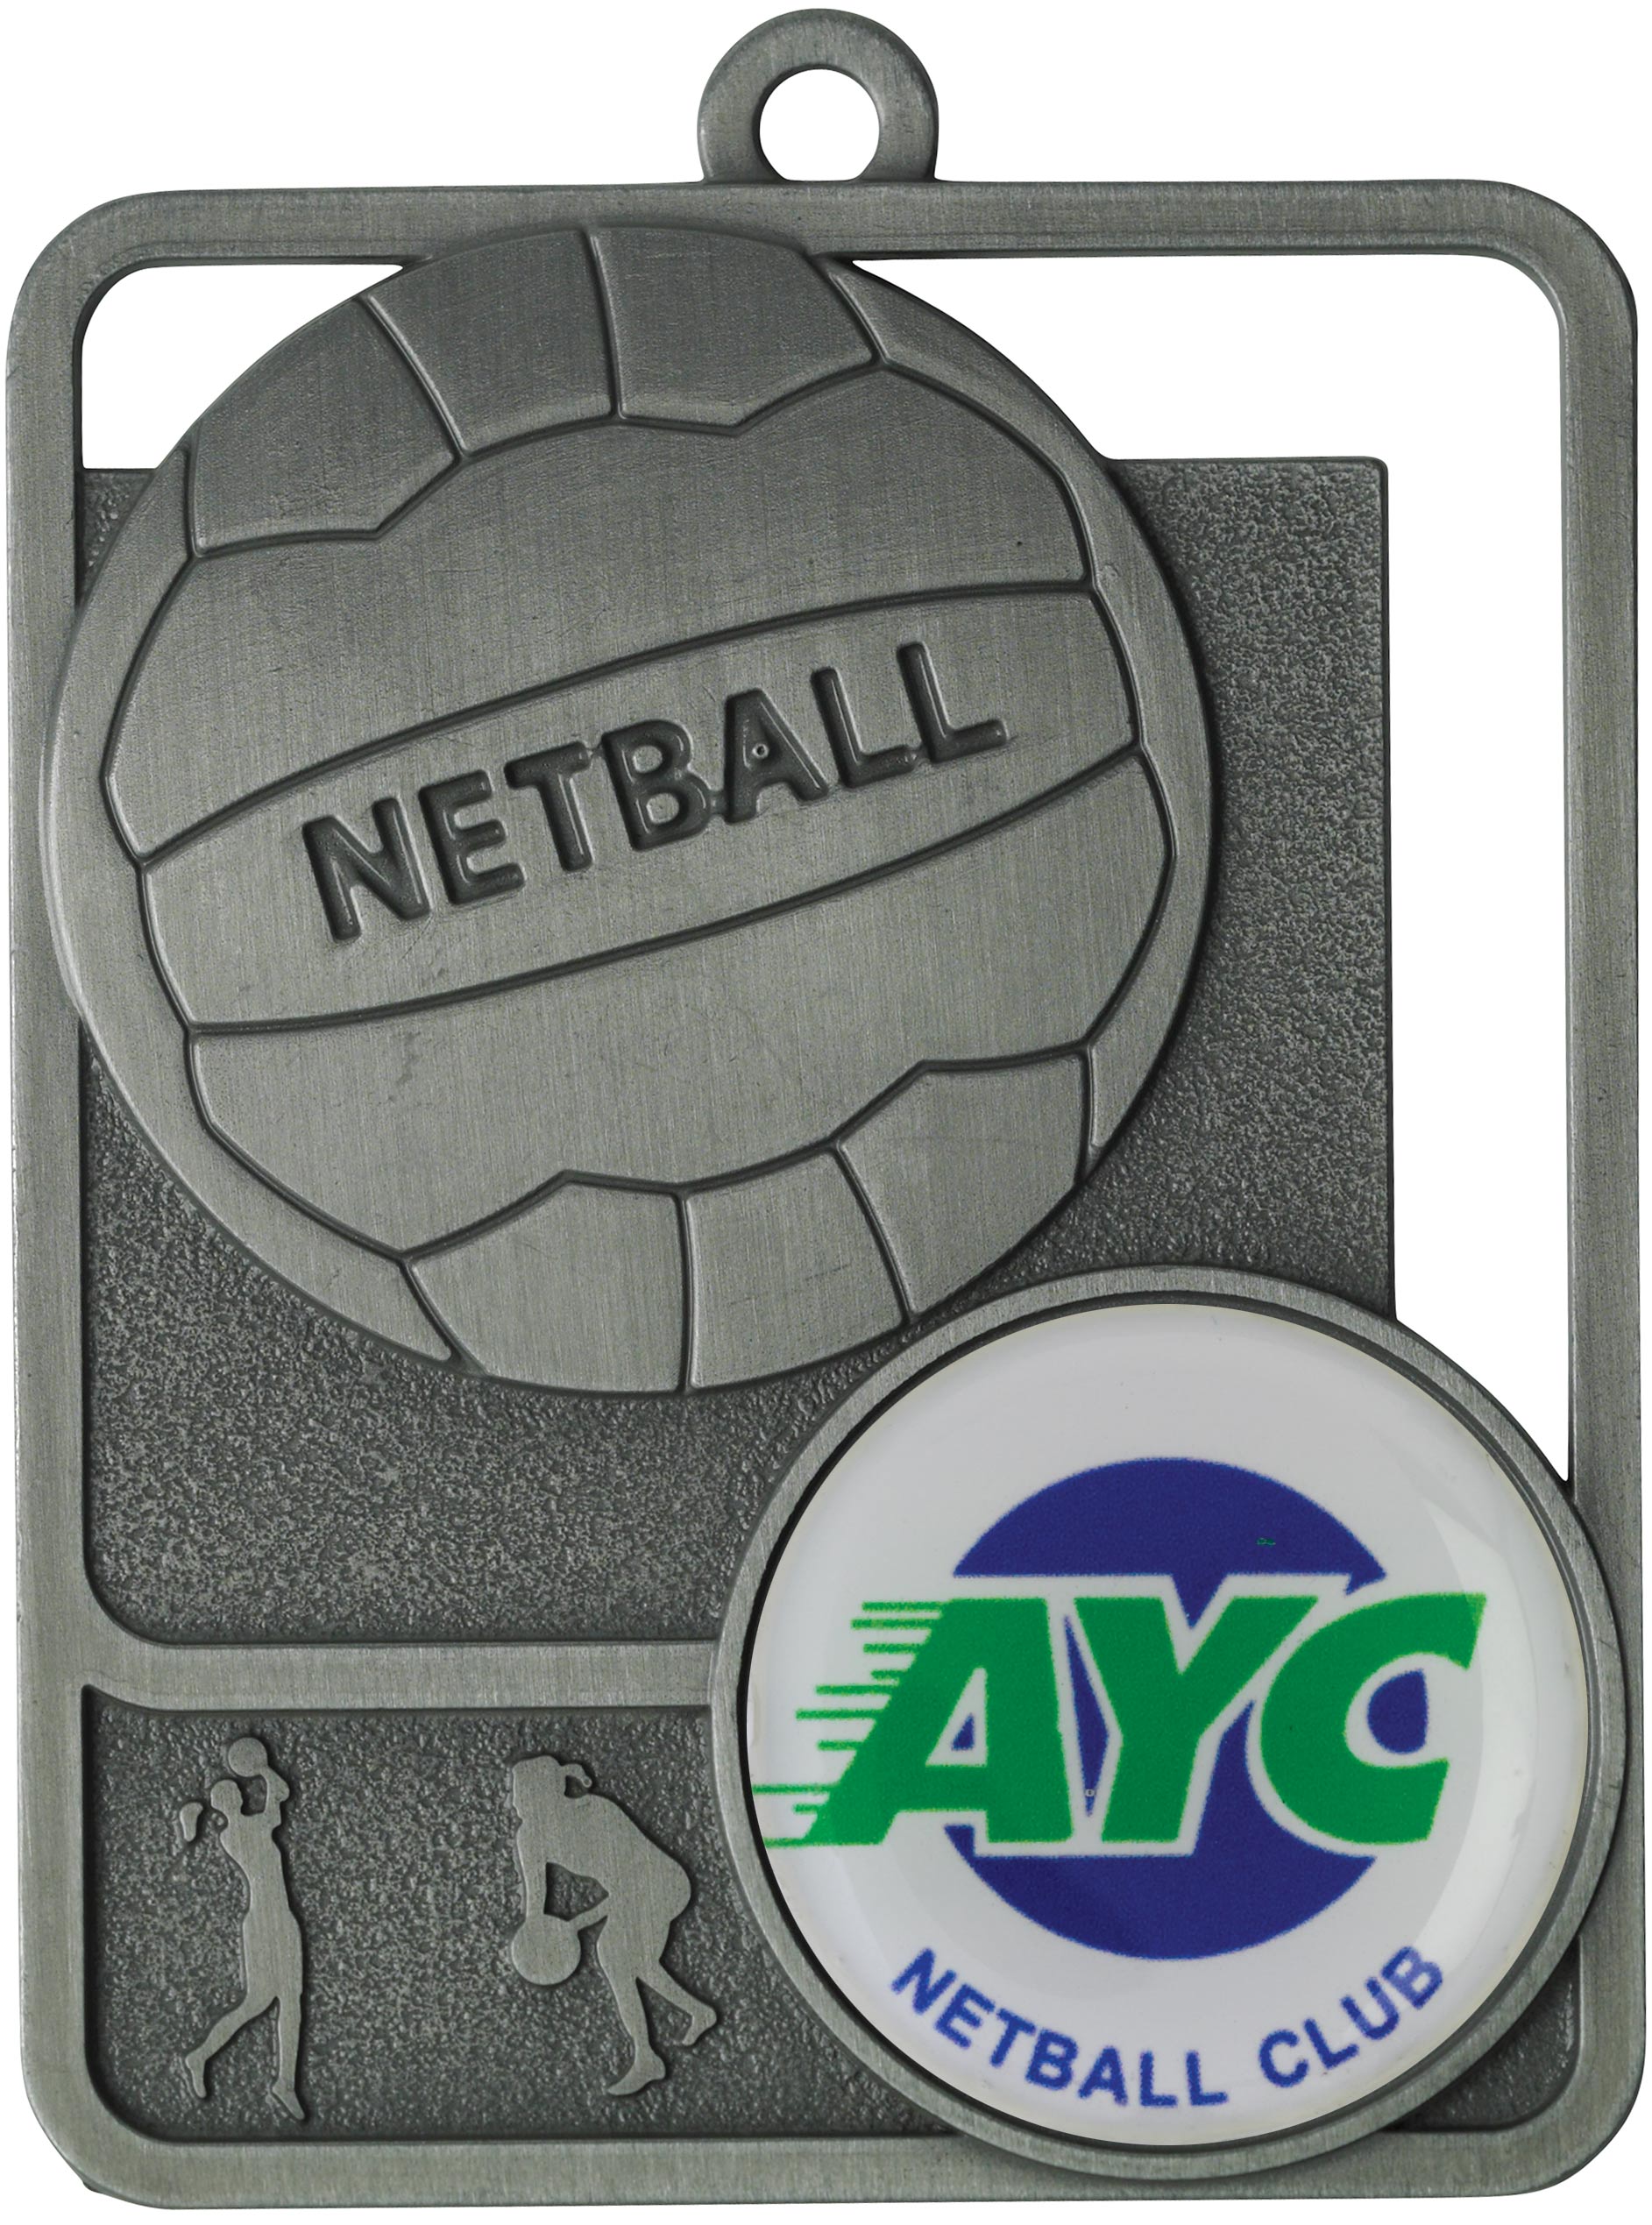 MR811 Netball Medal